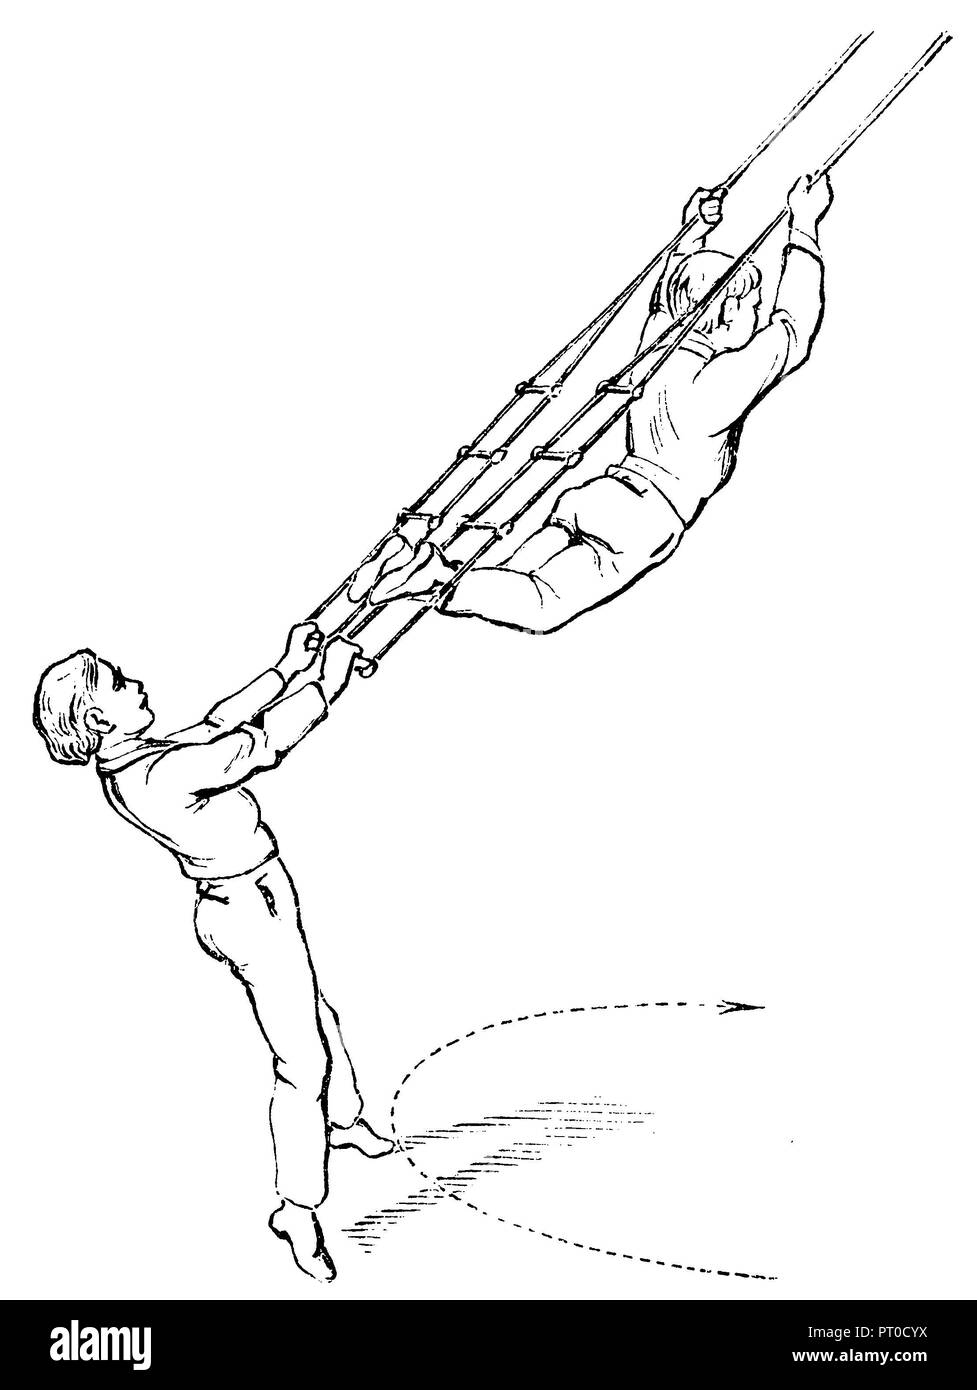 Gymnastik, Übung am Kletterseil: Zyklus auf zwei Leitern, wo eine andere Rückwärts hängt, 1890 Stockfoto